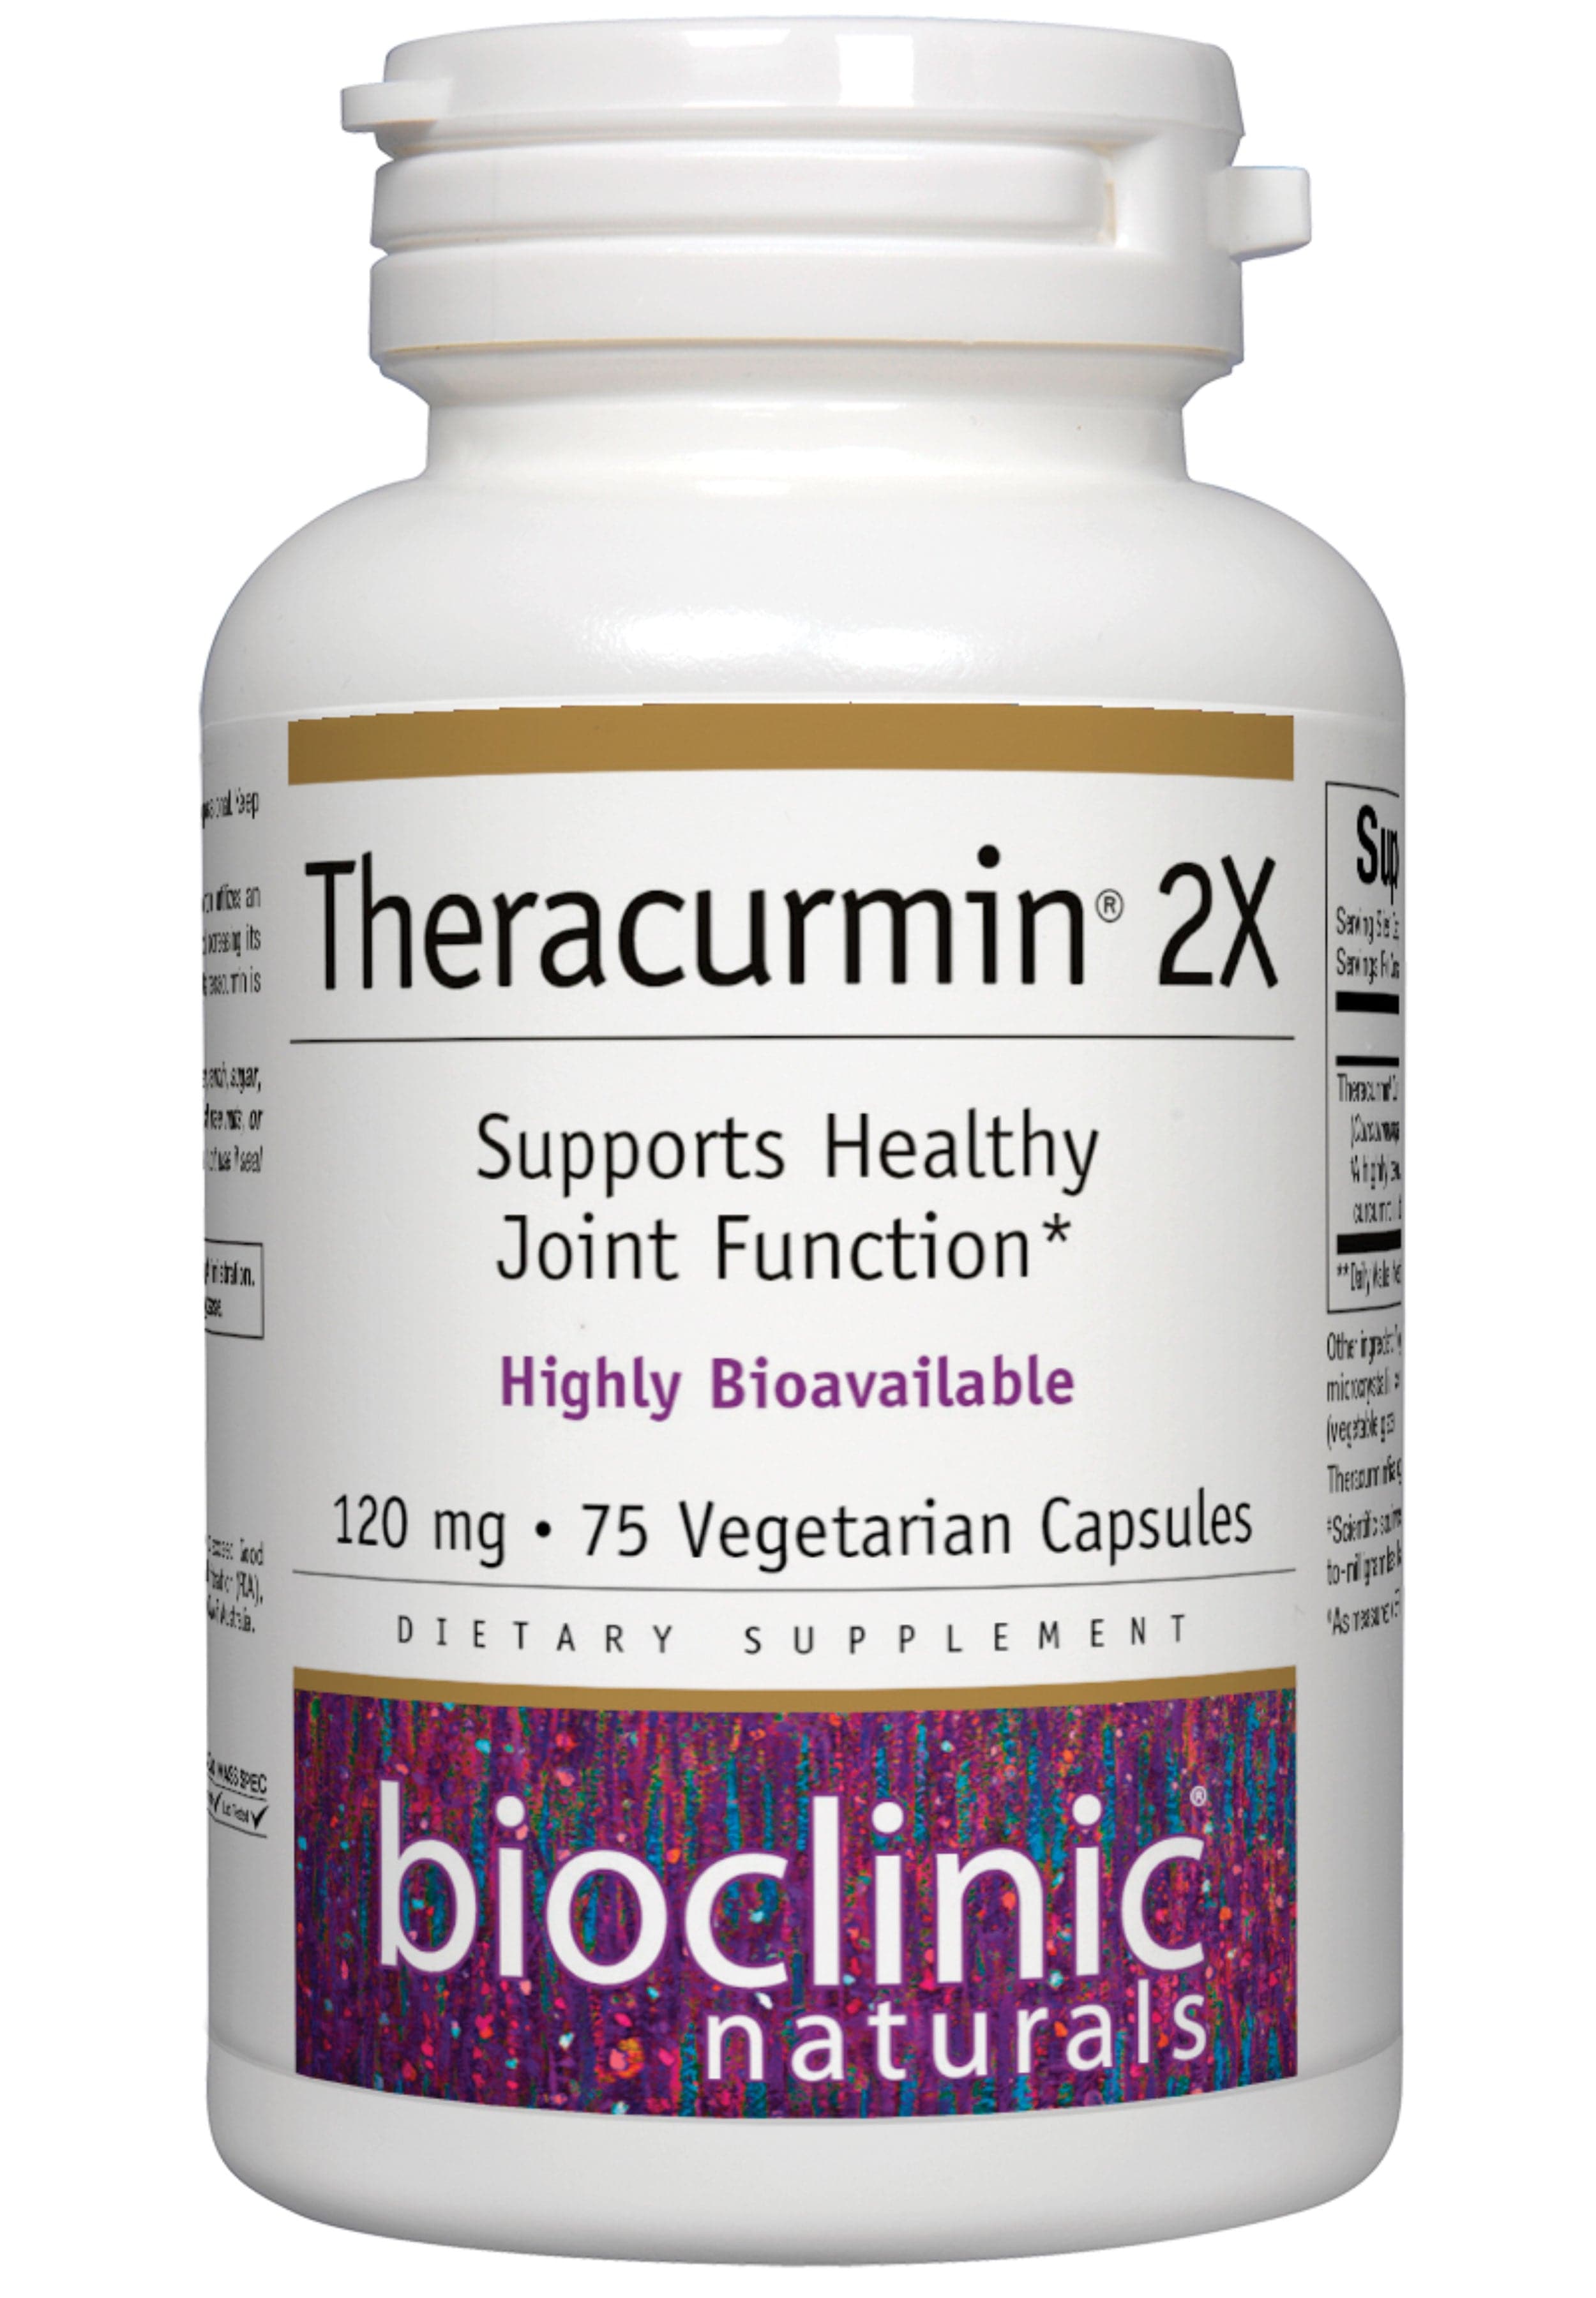 Bioclinic Naturals Theracurmin 2X 120mg